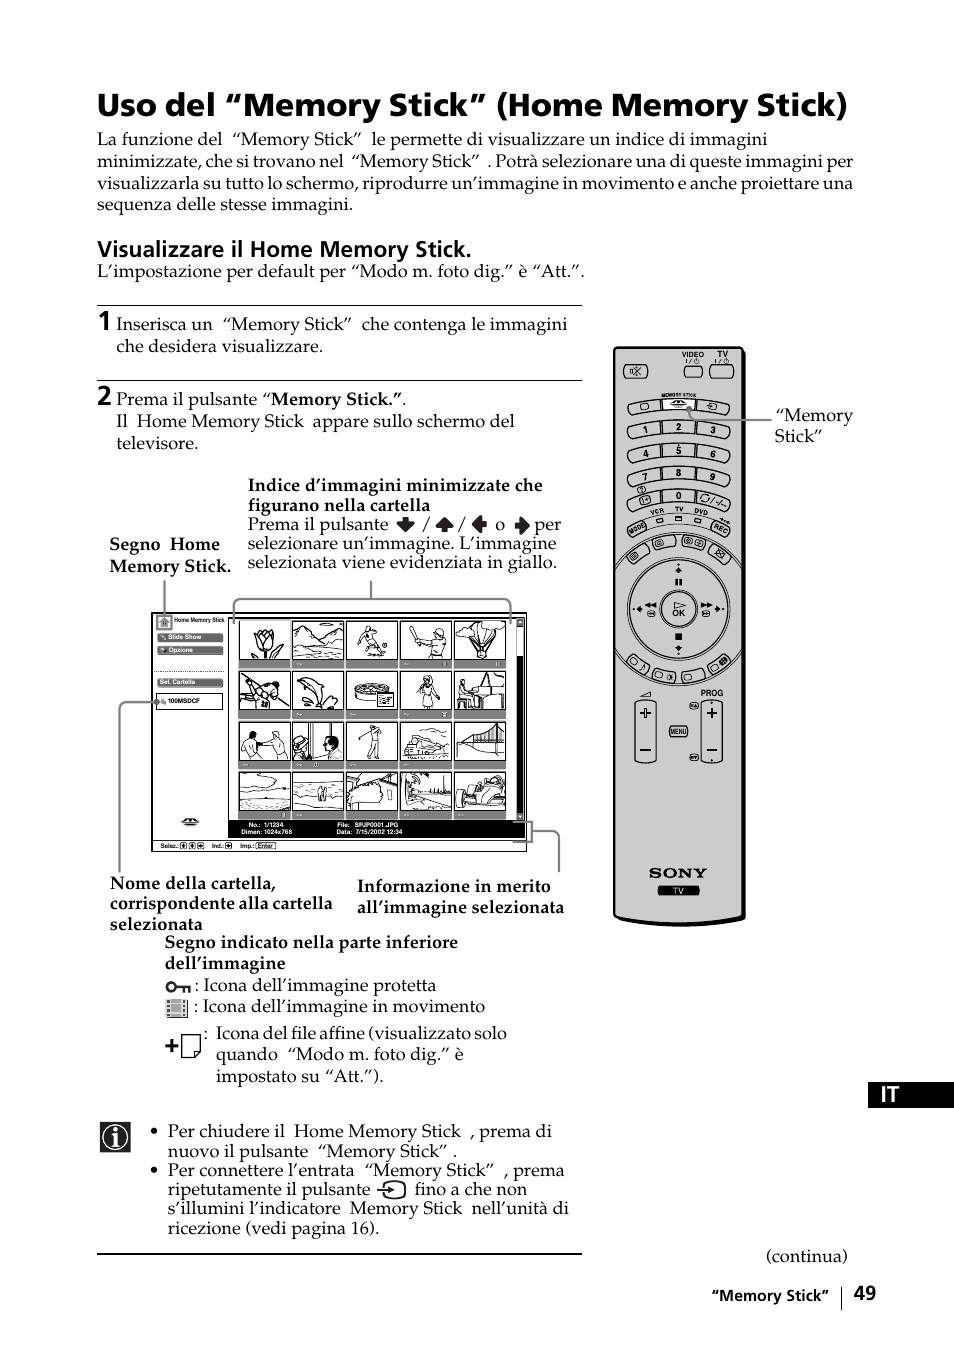 Sony KE-42MR1 Manuale d'uso | Pagina 50 / 302